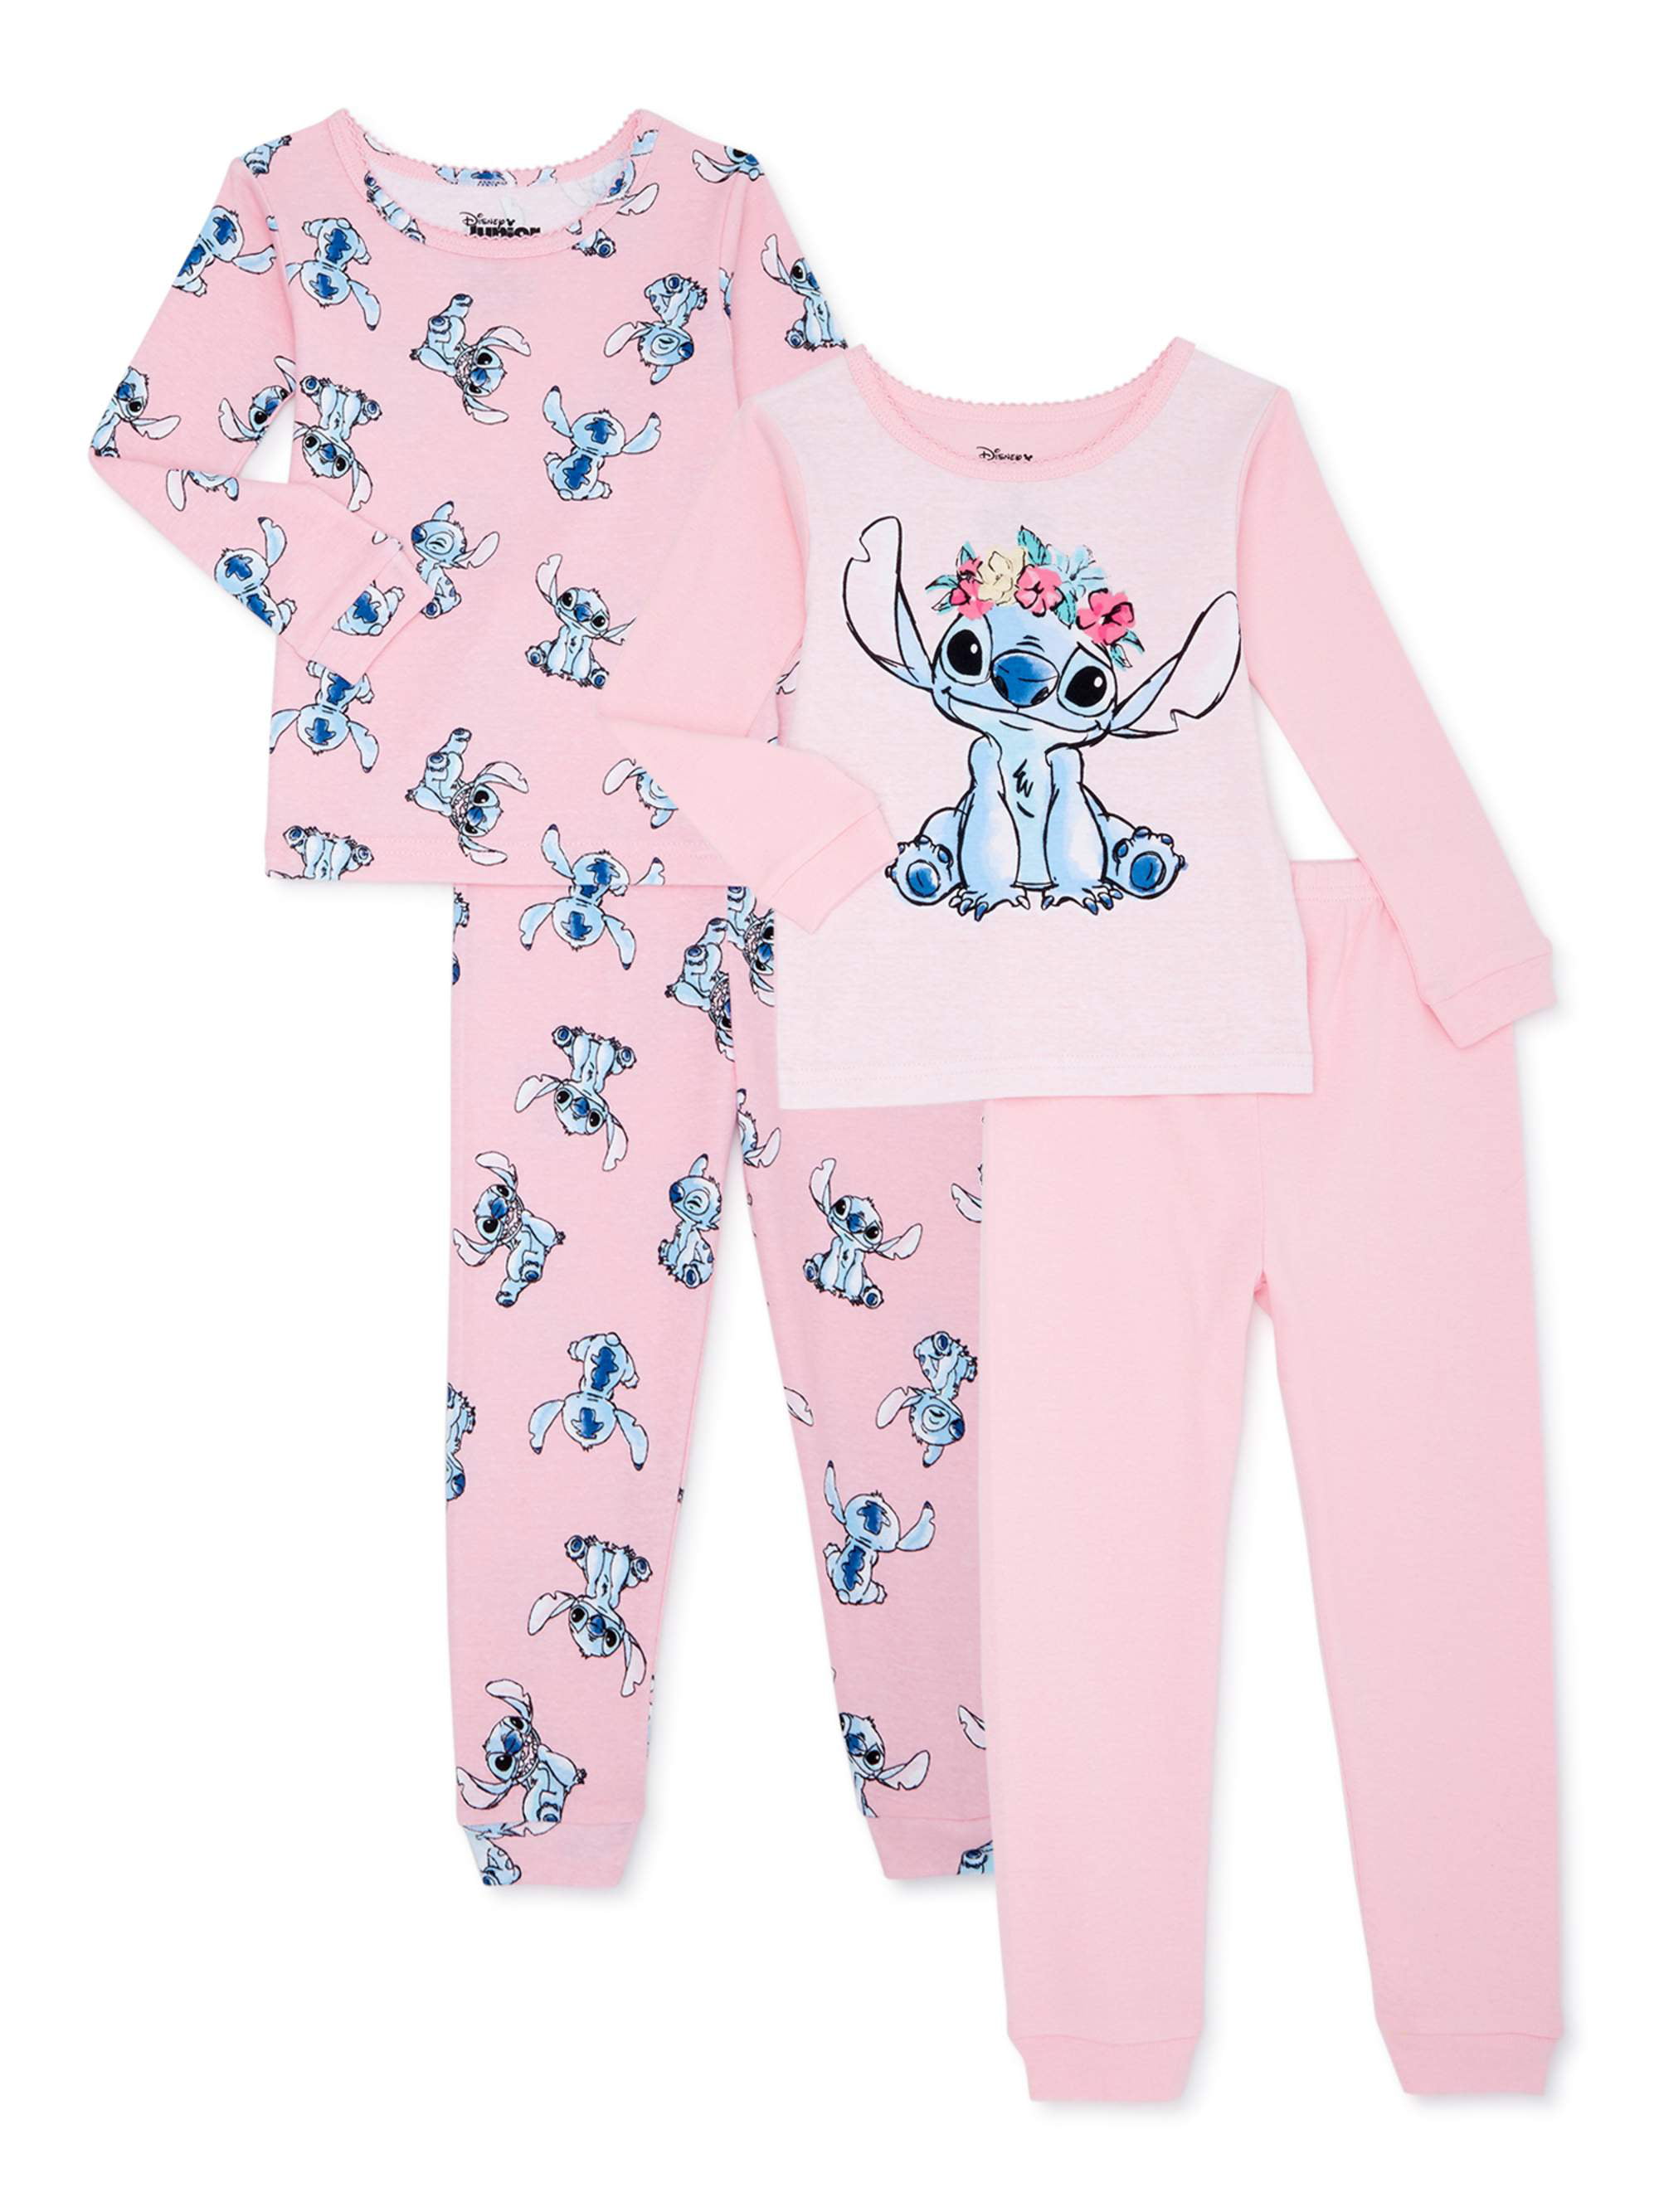 pijamas lilo – Compra pijamas lilo con envío gratis en AliExpress version